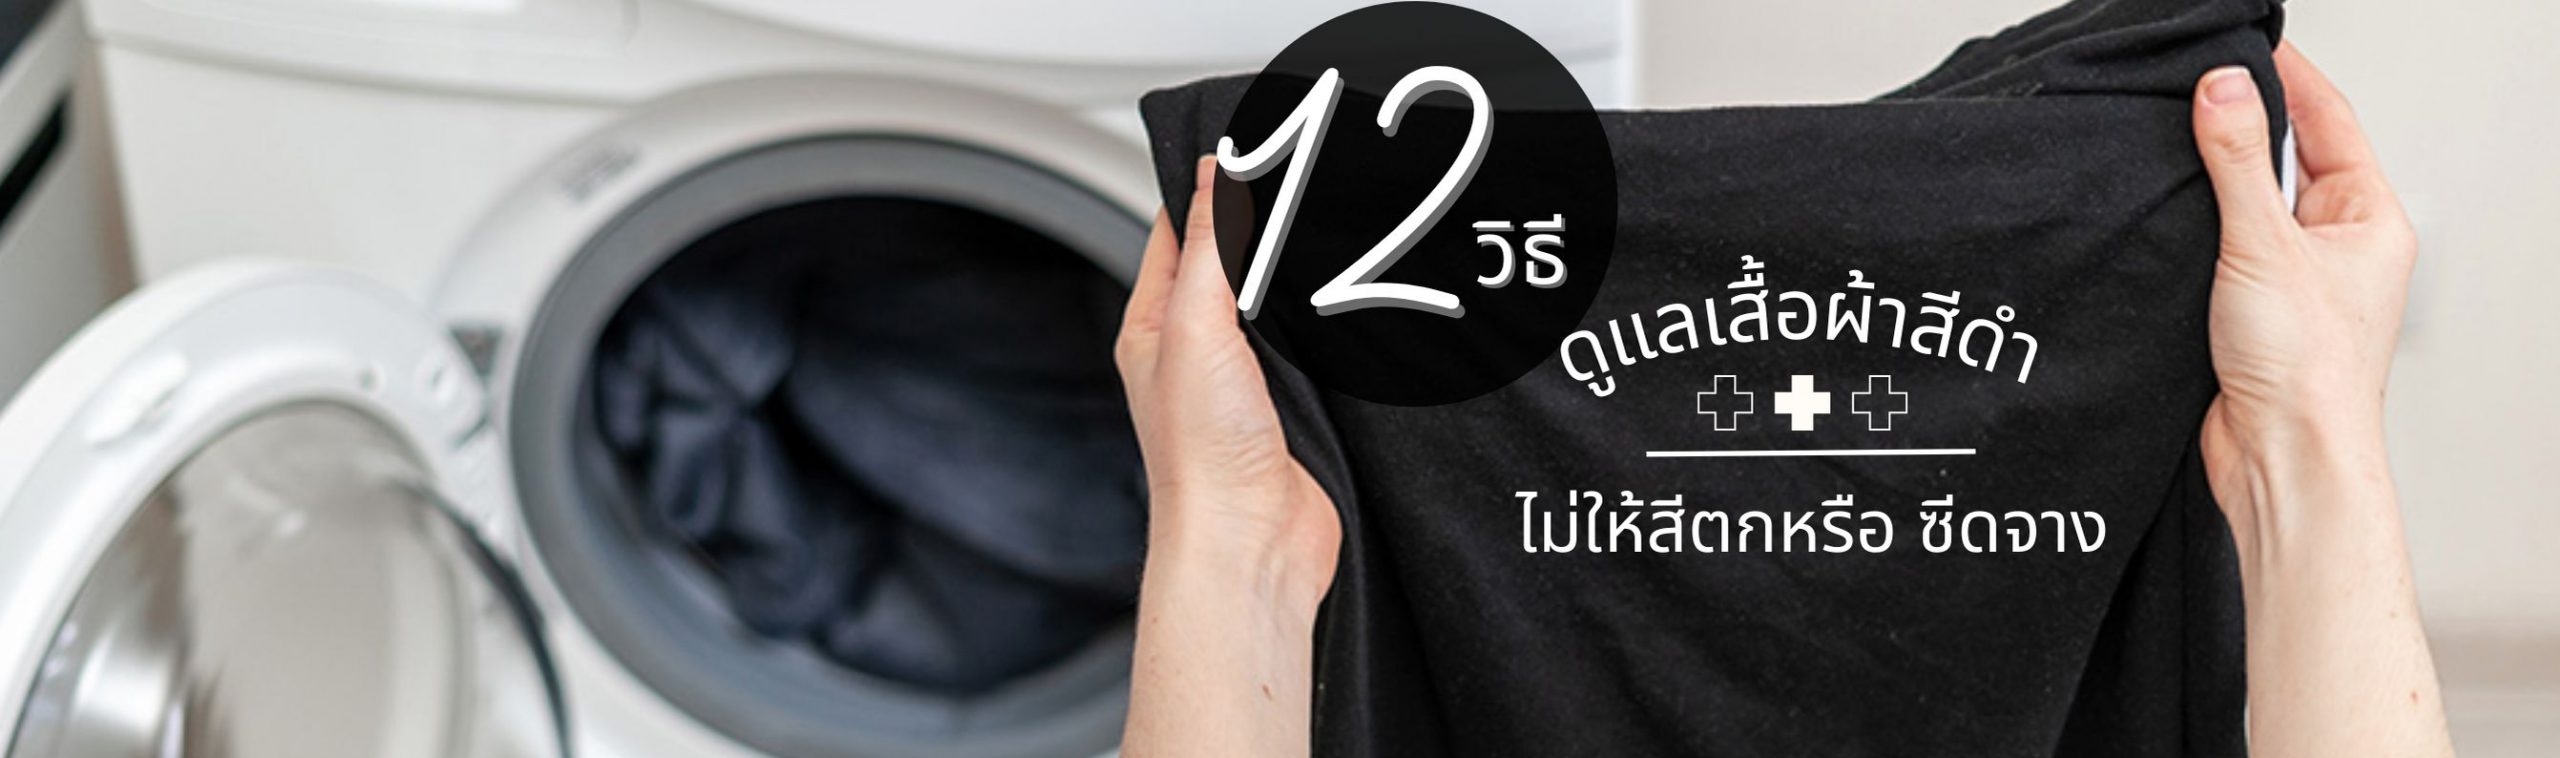 12 วิธีซักและดูแลเสื้อผ้าสีดำจากทอฟฟี่บูติก